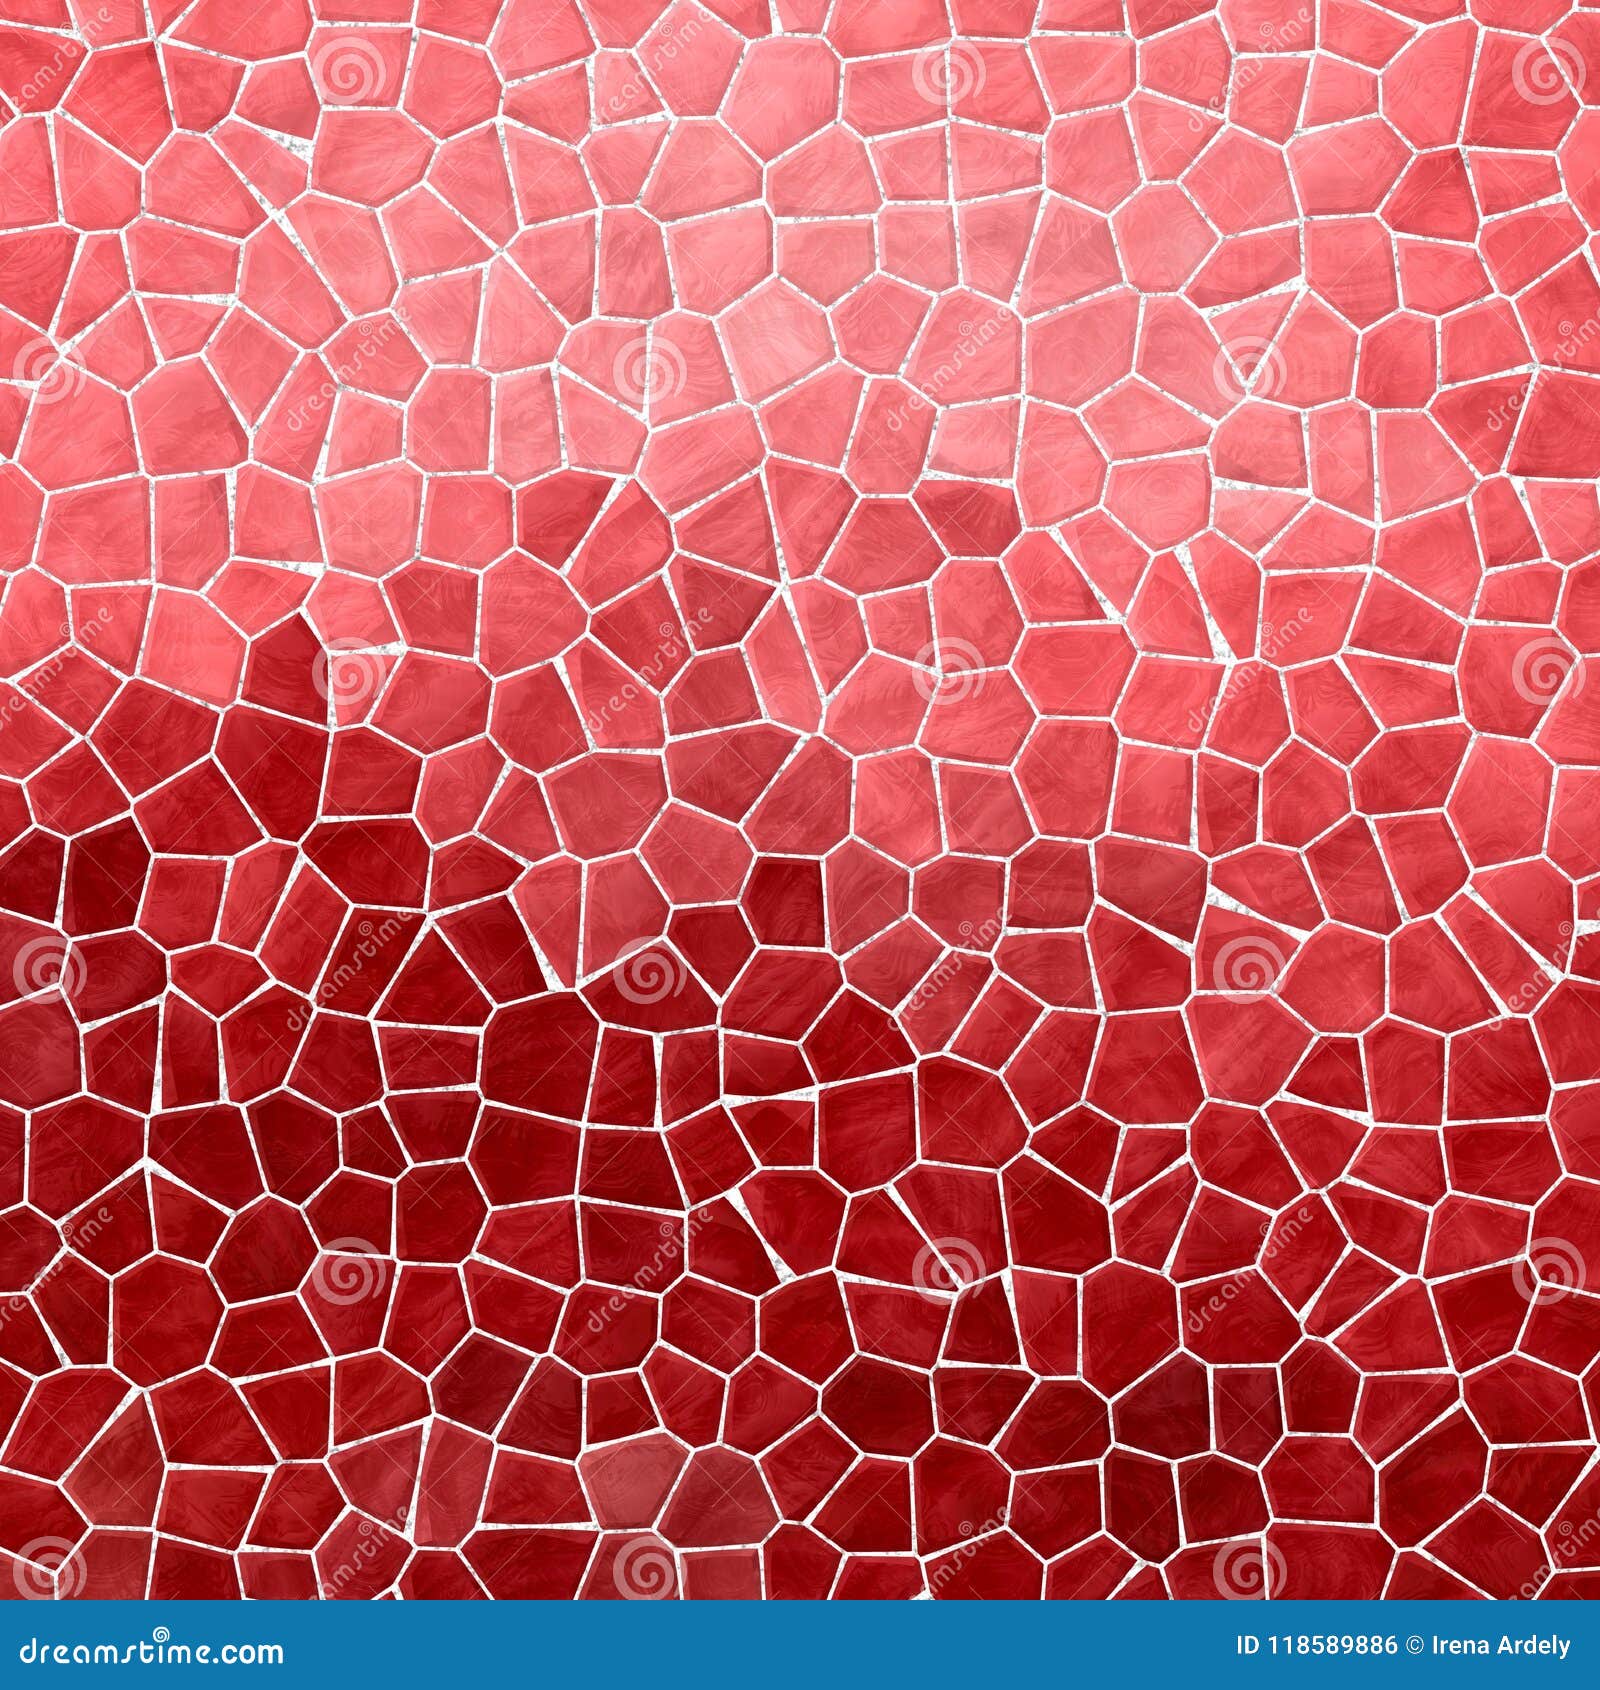 Gạch mosaic đa dạng: Khám phá sự đa dạng của gạch mosaic trong ảnh và tìm hiểu cách chúng có thể biến đổi không gian của bạn với những mẫu mã và màu sắc độc đáo. Hình ảnh sẽ cho bạn cảm xúc về sự sáng tạo và tính thẩm mỹ của gạch mosaic.